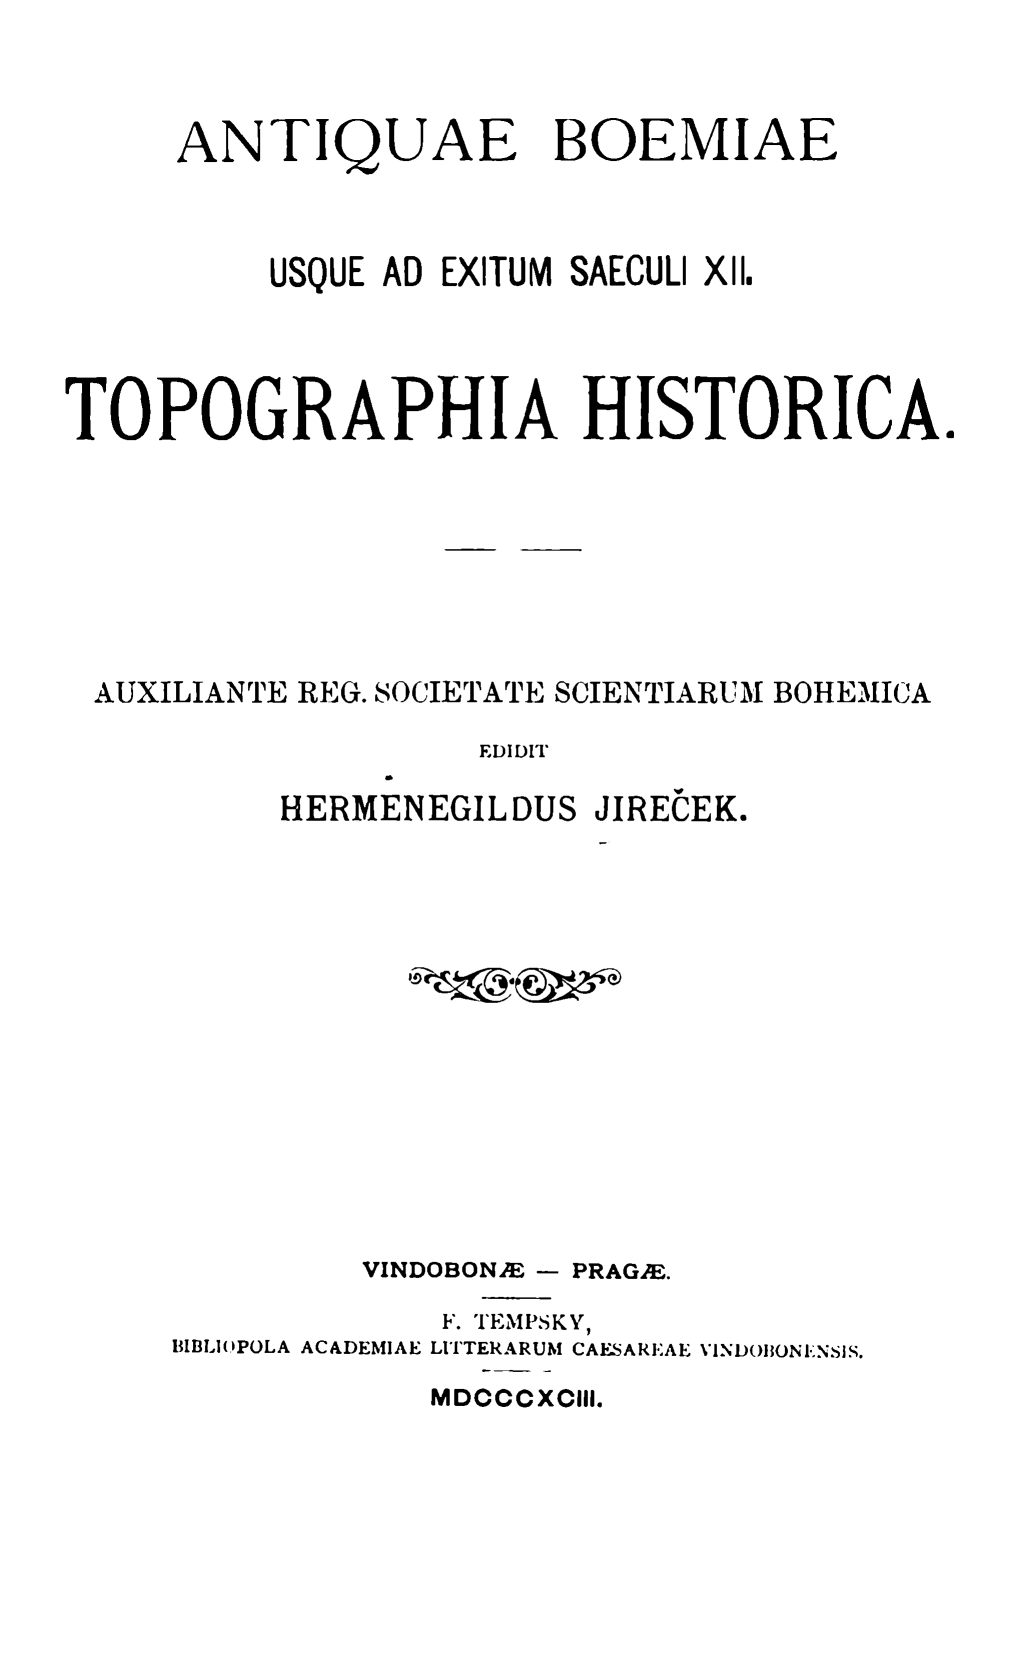 Topographia Historica